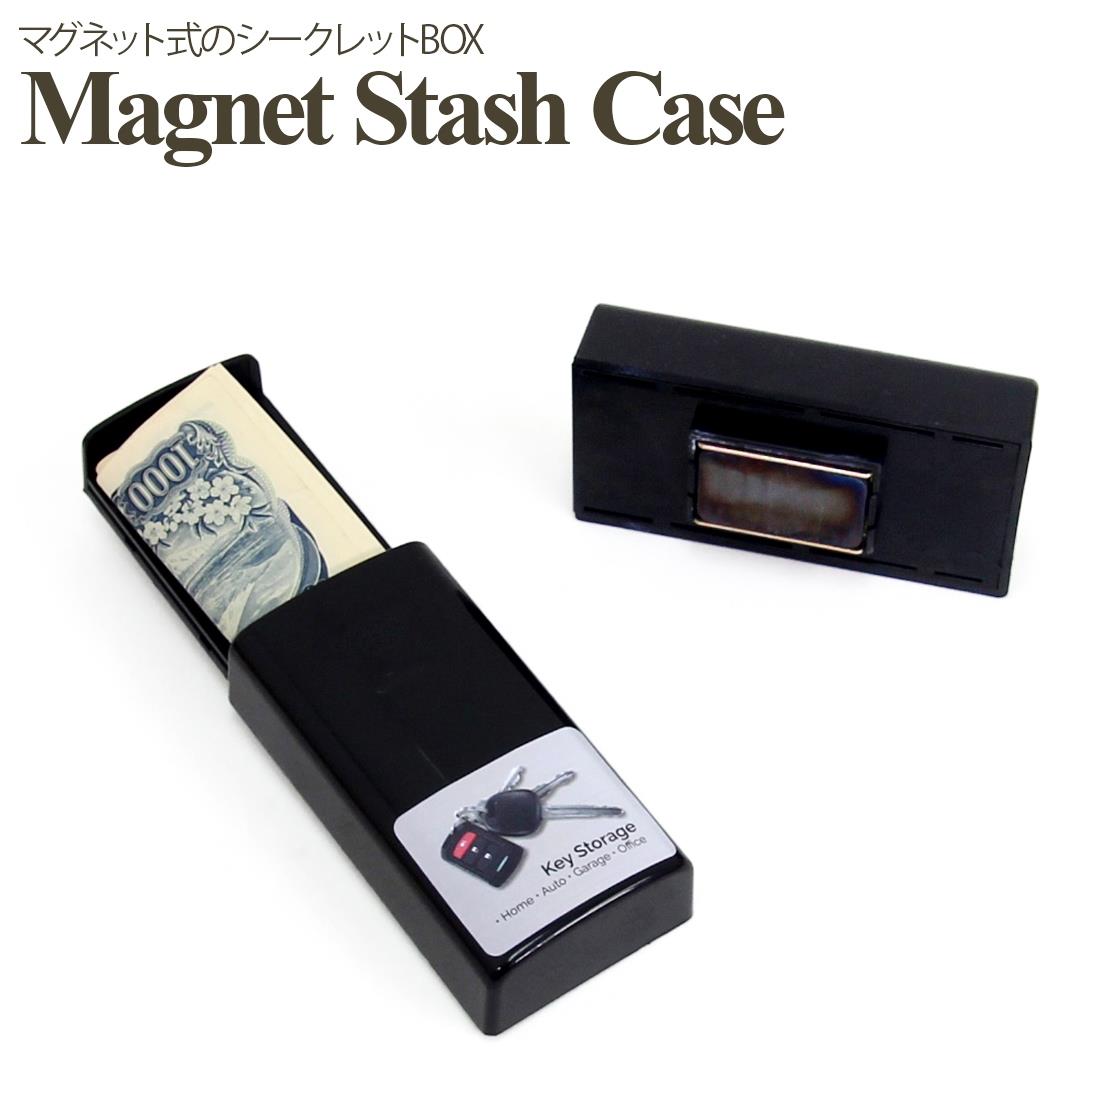 マグネット式 シークレットケース 隠し金庫 隠しケース スタッシュケース シークレットBOX ボックス 小型 へそくり magnet stash case box